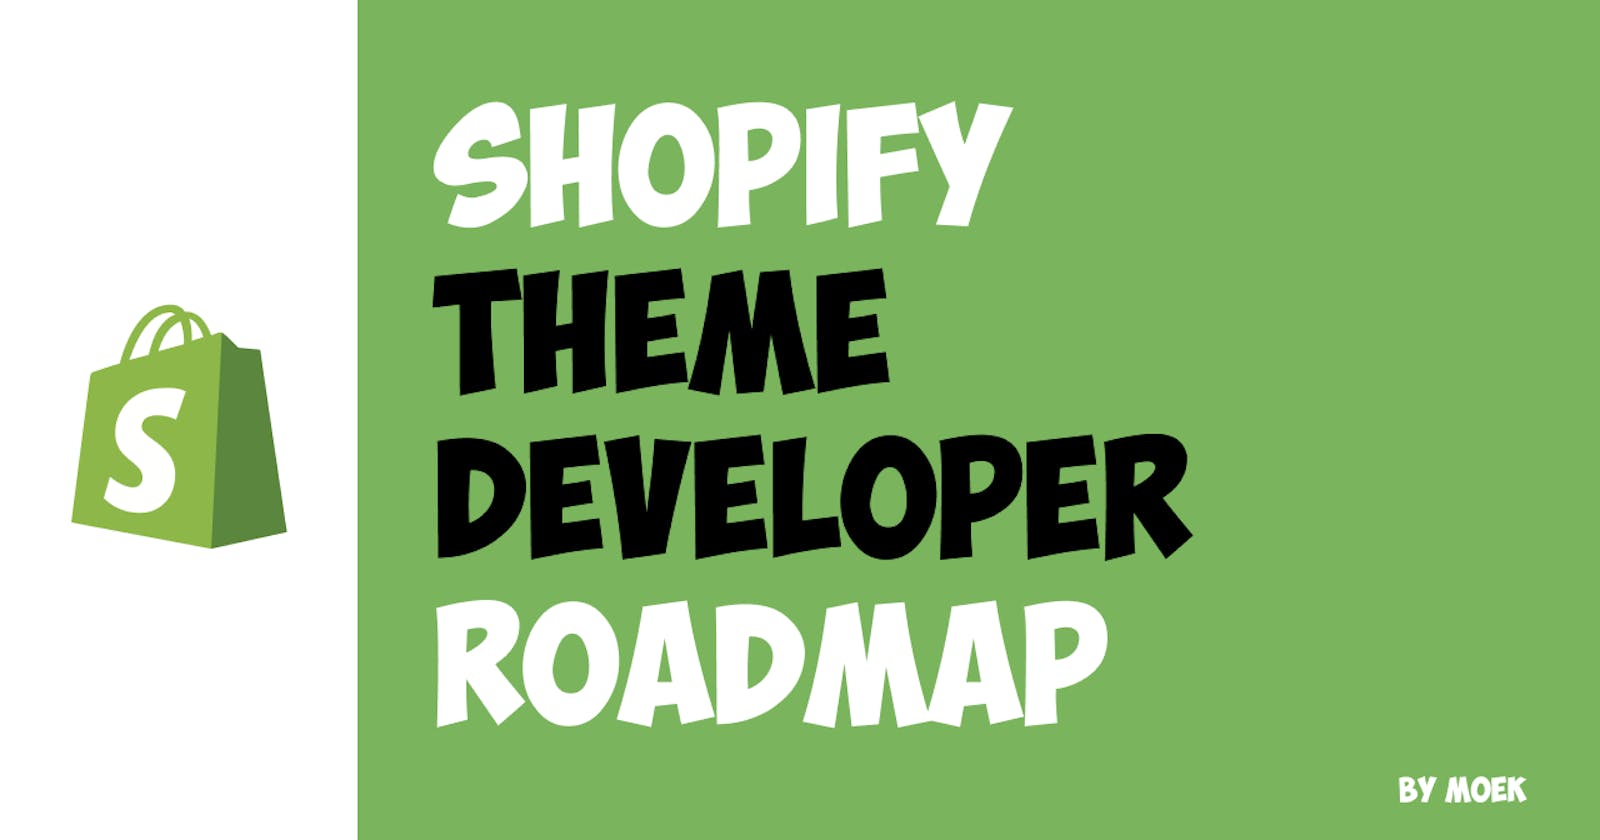 Shopify Theme Developer Roadmap